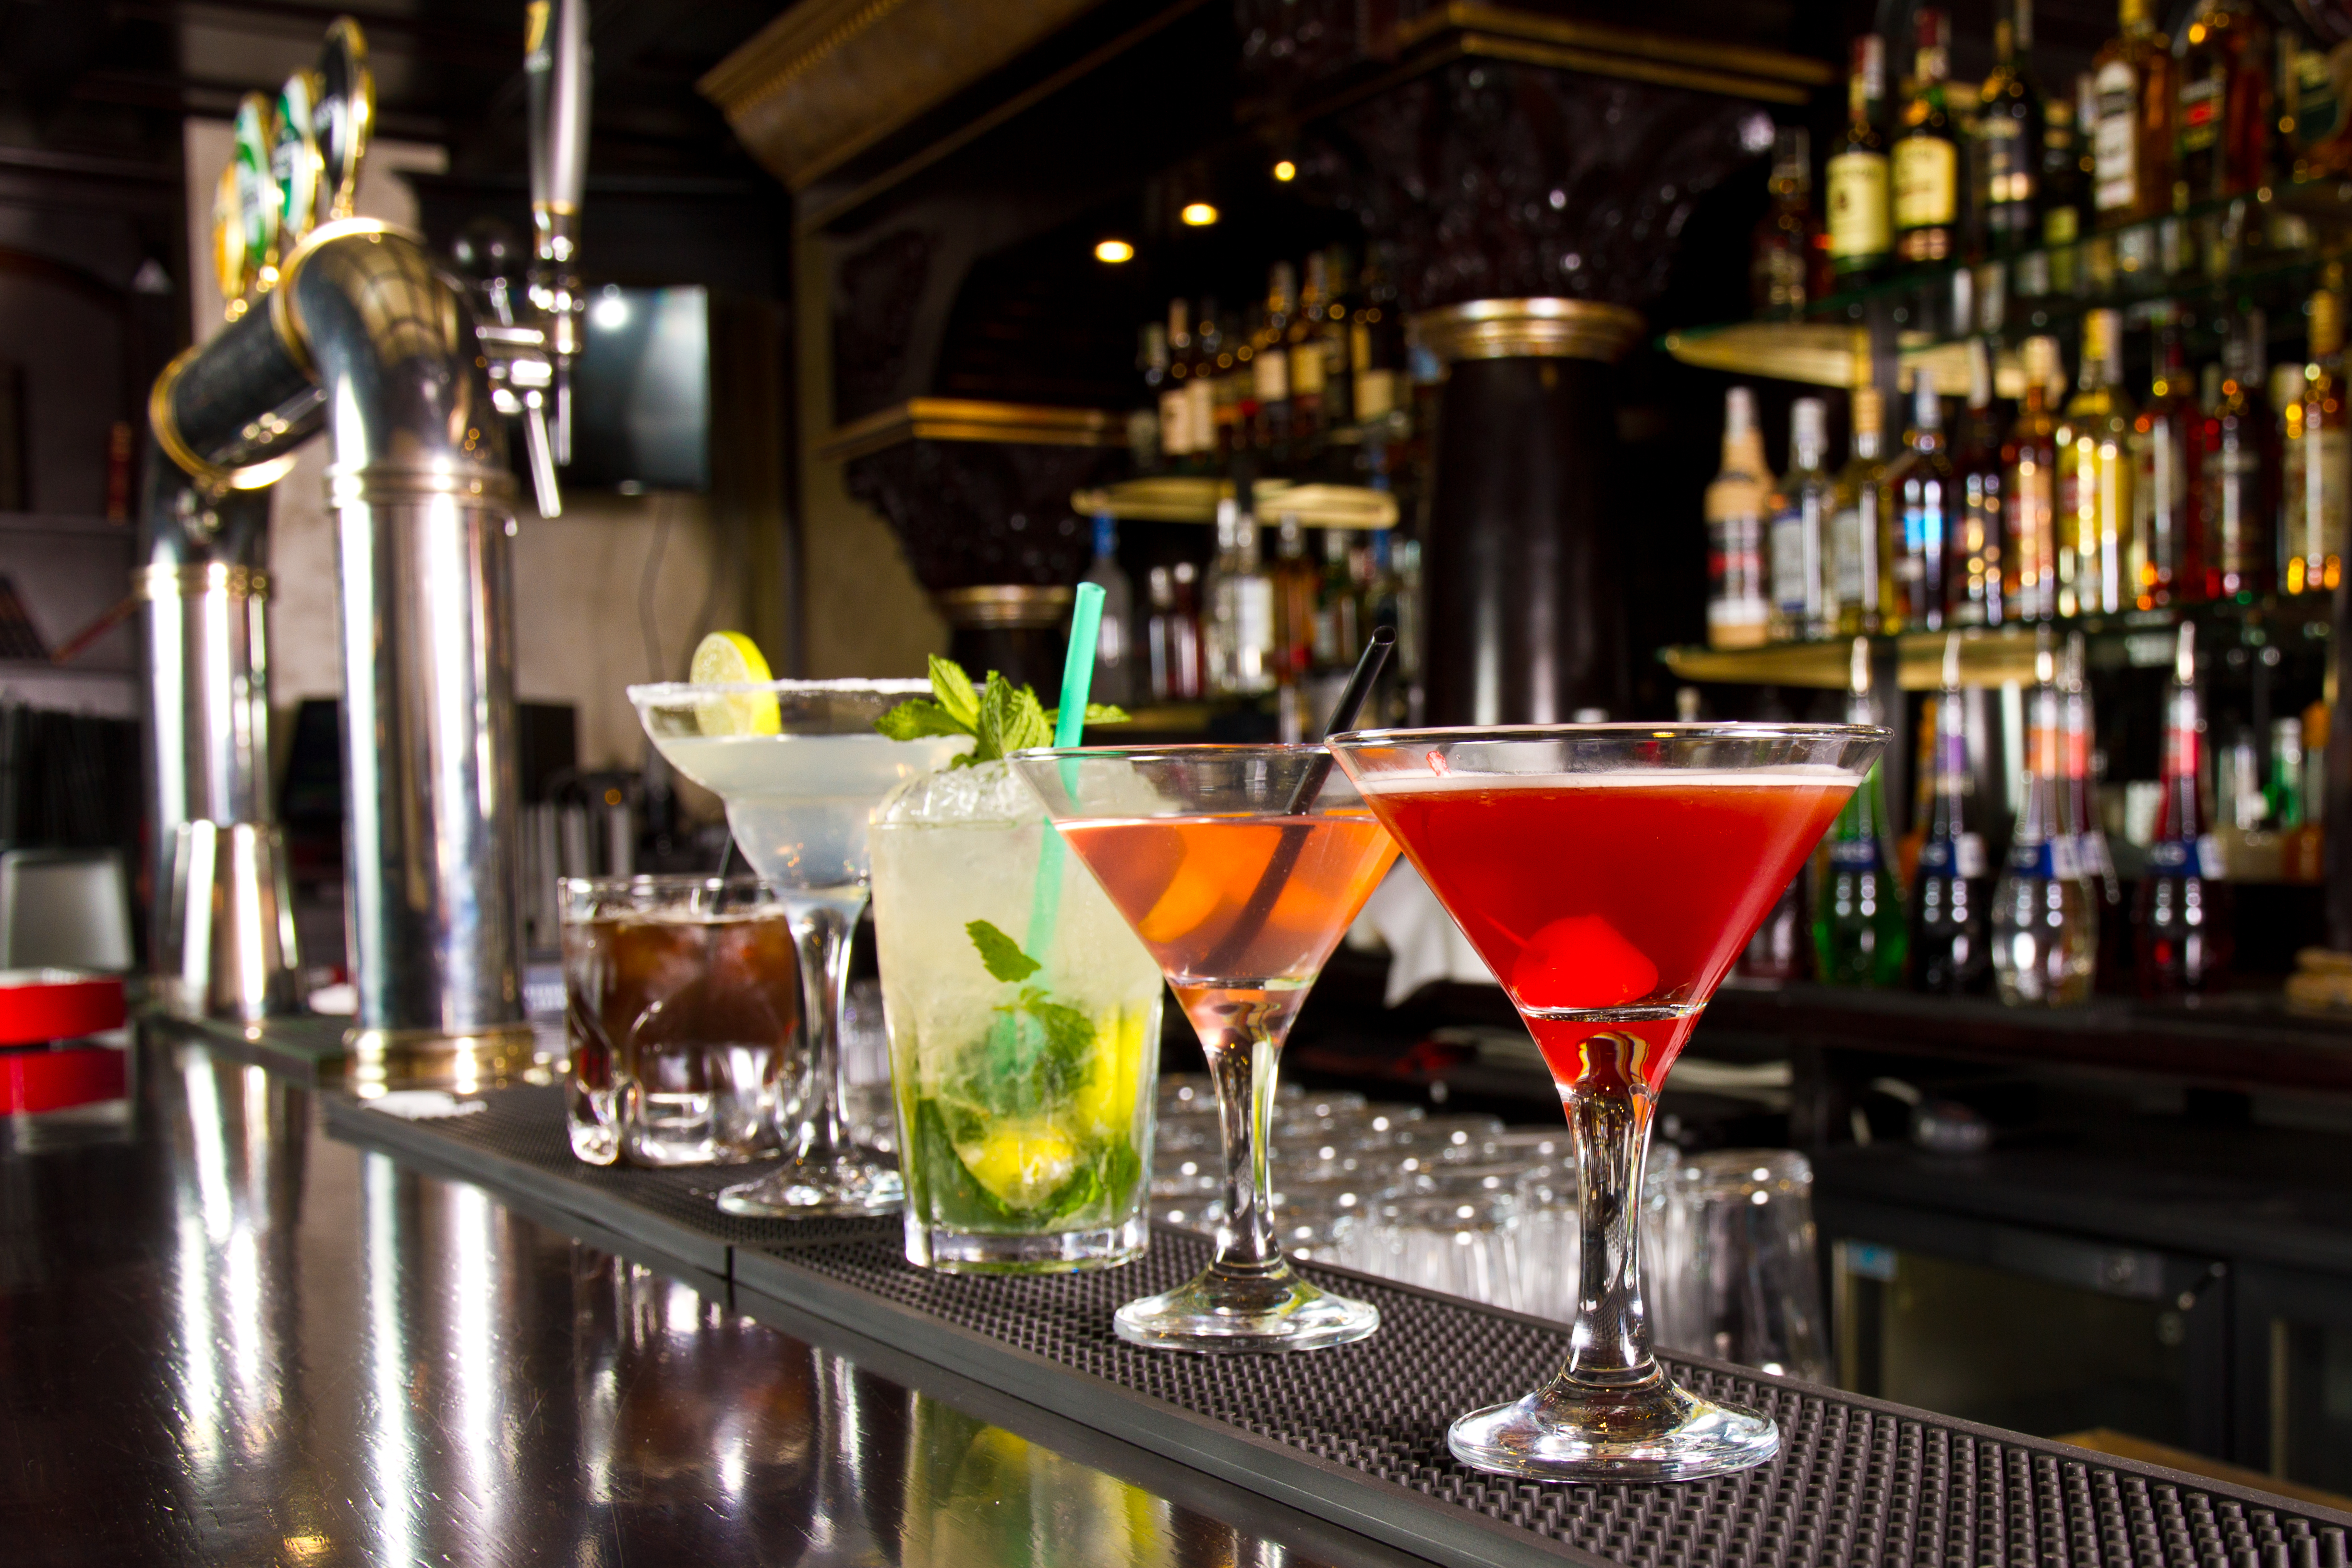 Cinco cócteles en el mostrador del bar. | Fuente: Shutterstock